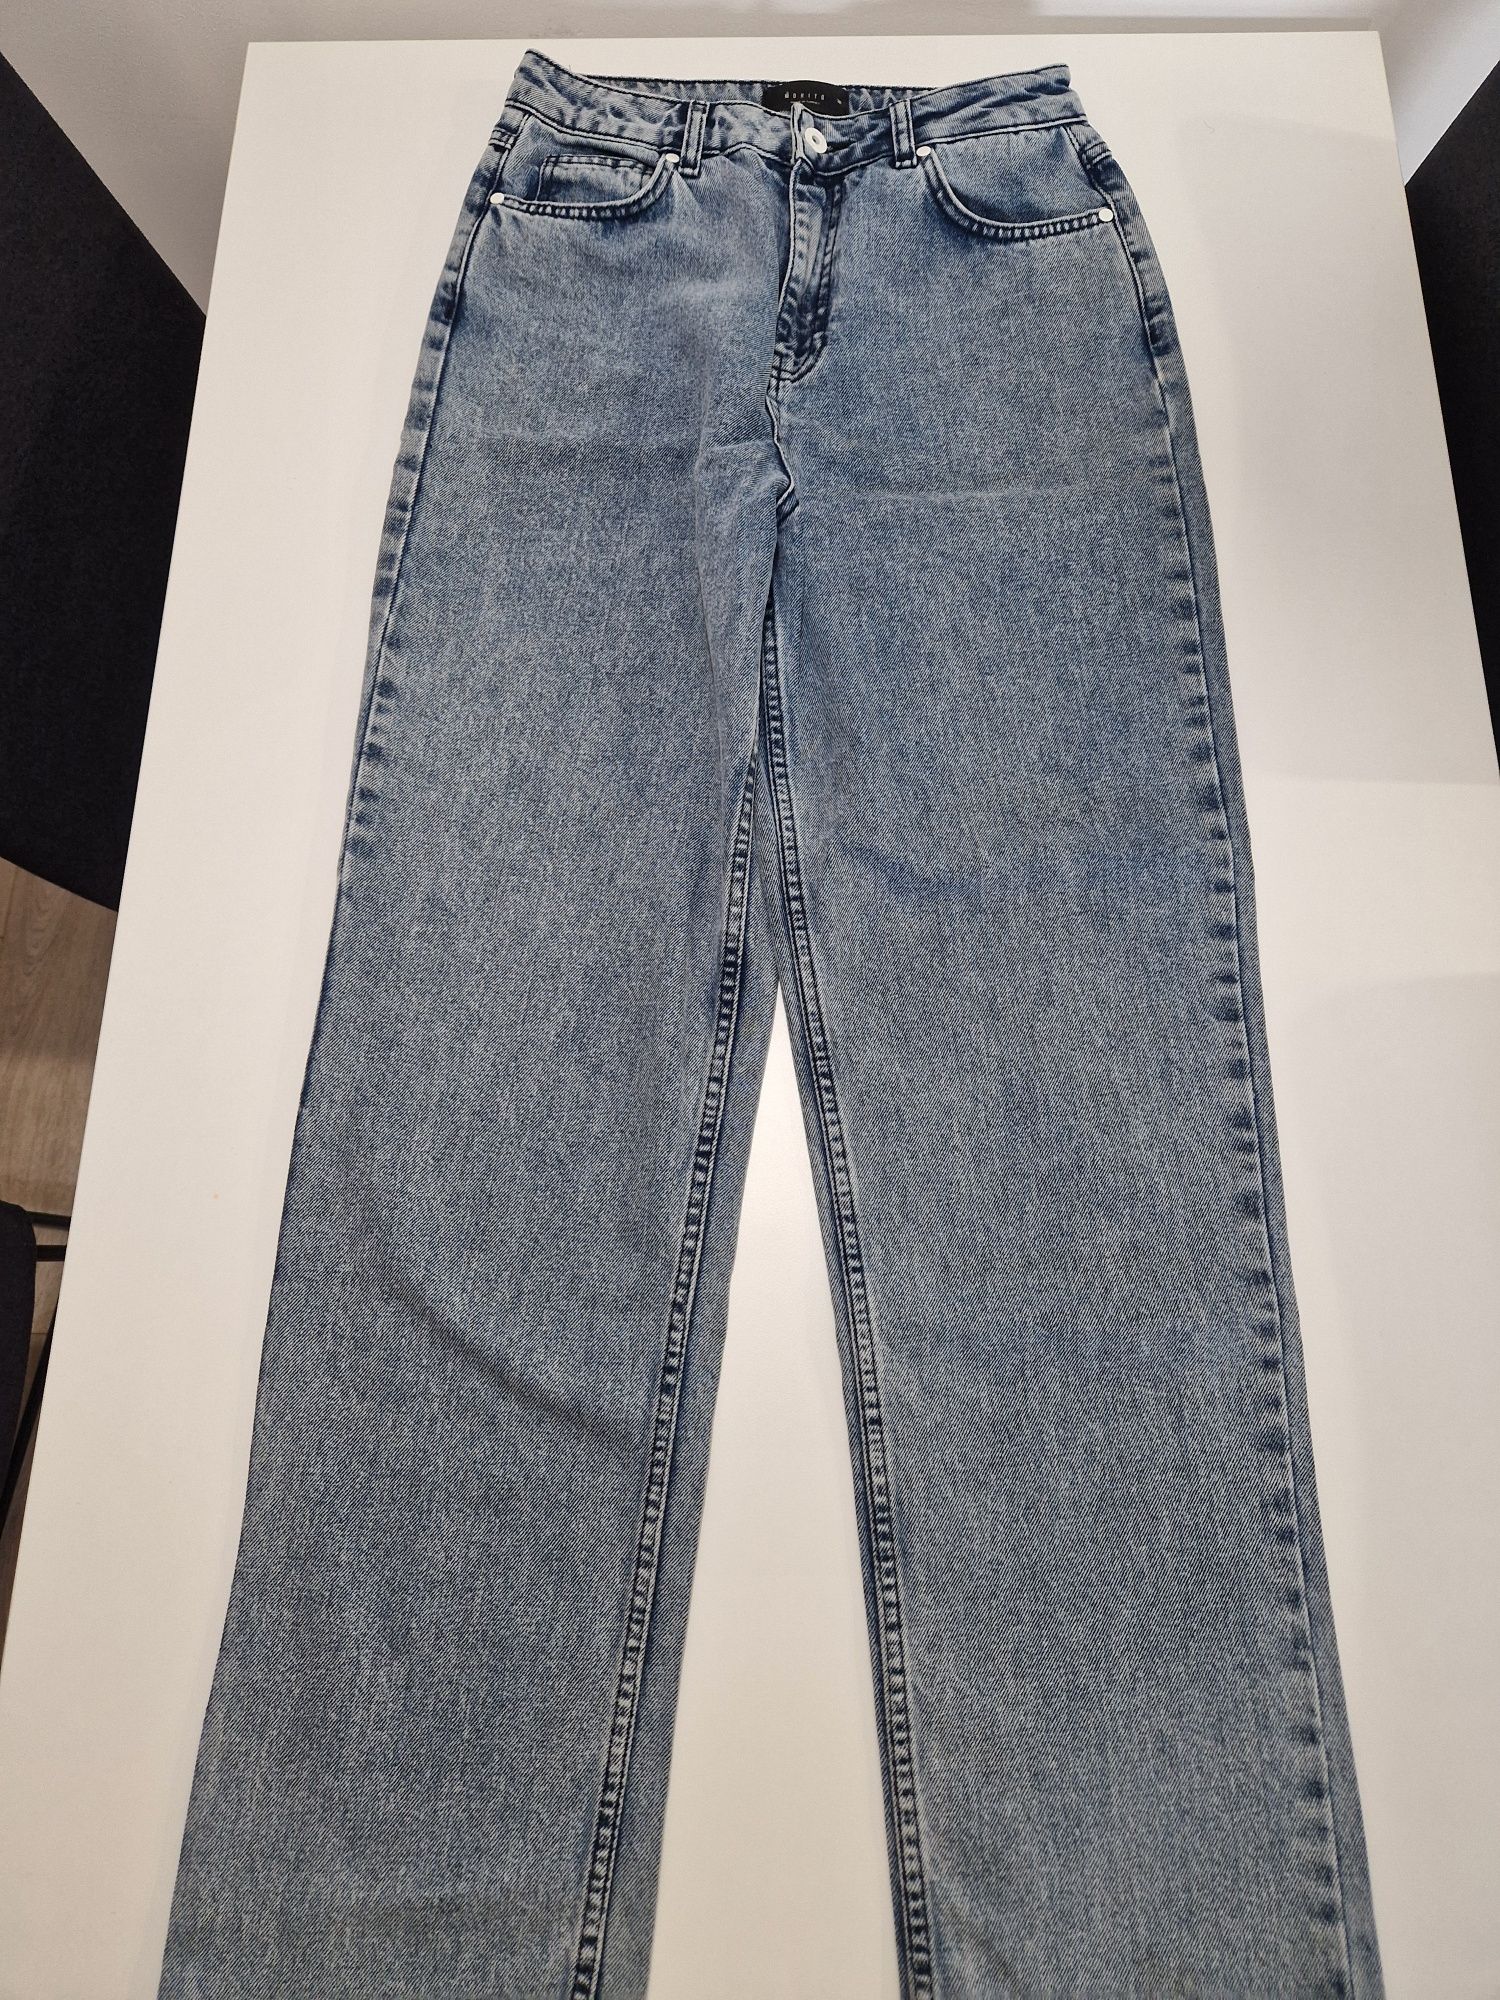 Spodnie jeansowe firmy Mohito rozm. 36